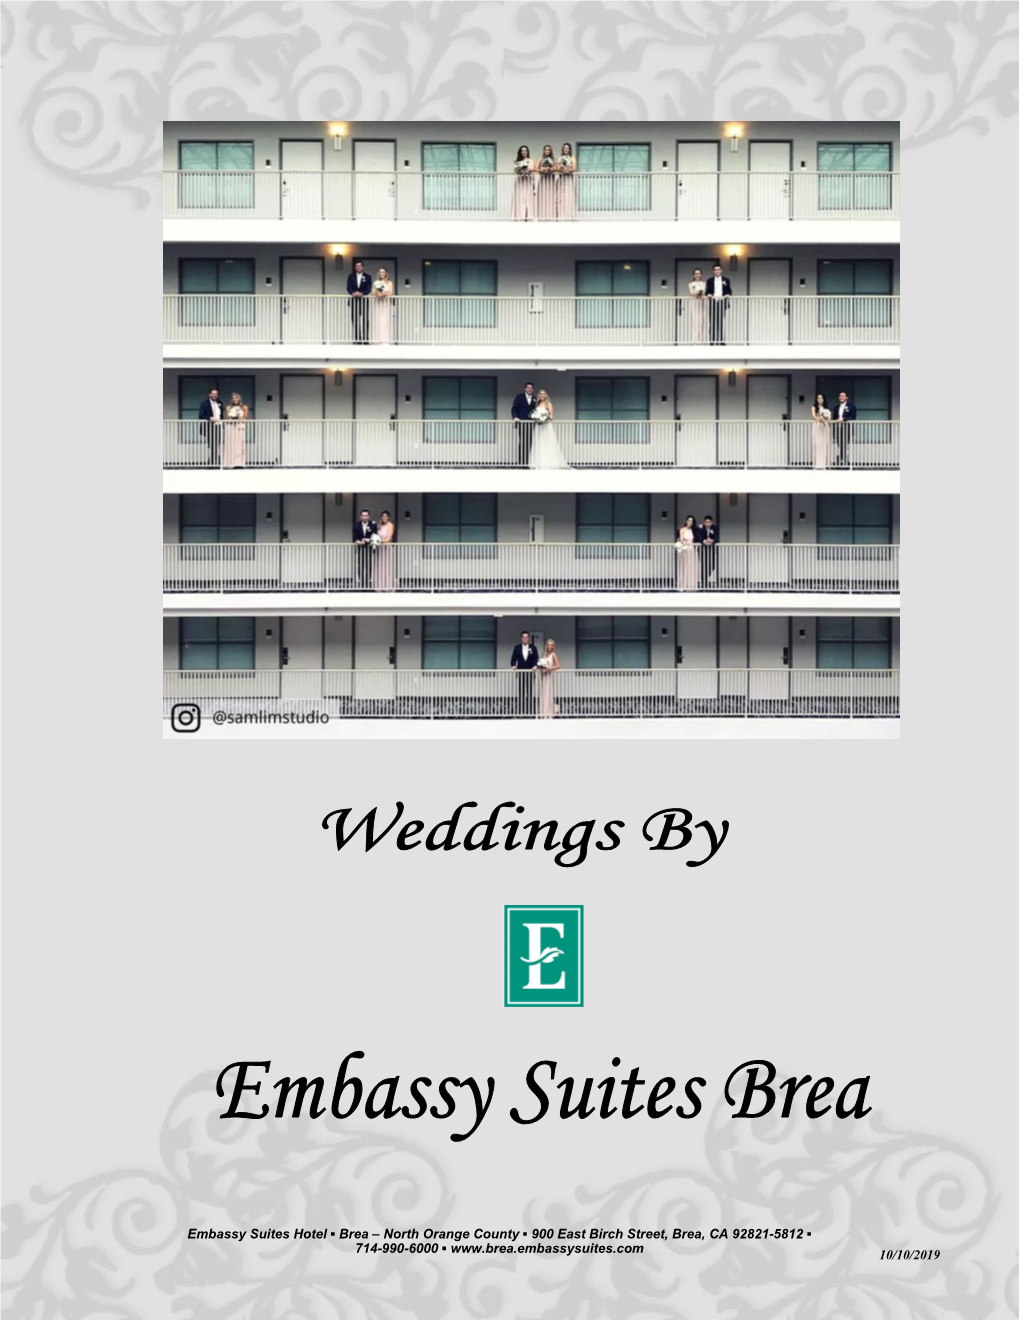 10/10/2019 Embassy Suites Hotel Brea – North Orange County 900